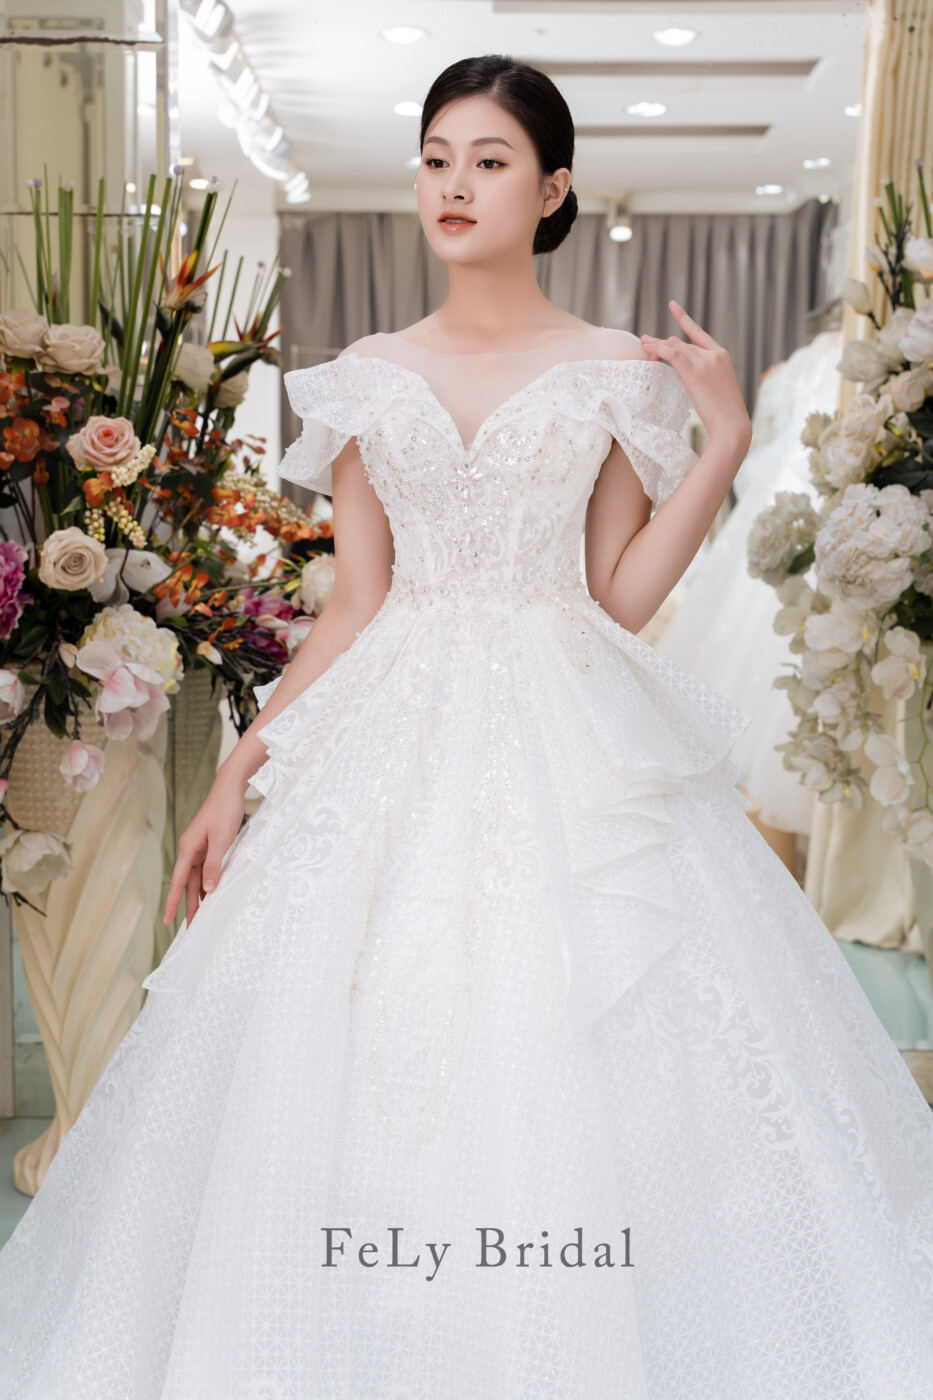 5 mẫu váy cưới 2020 bắt trend từ các cô dâu sành điệu nhất Vbiz